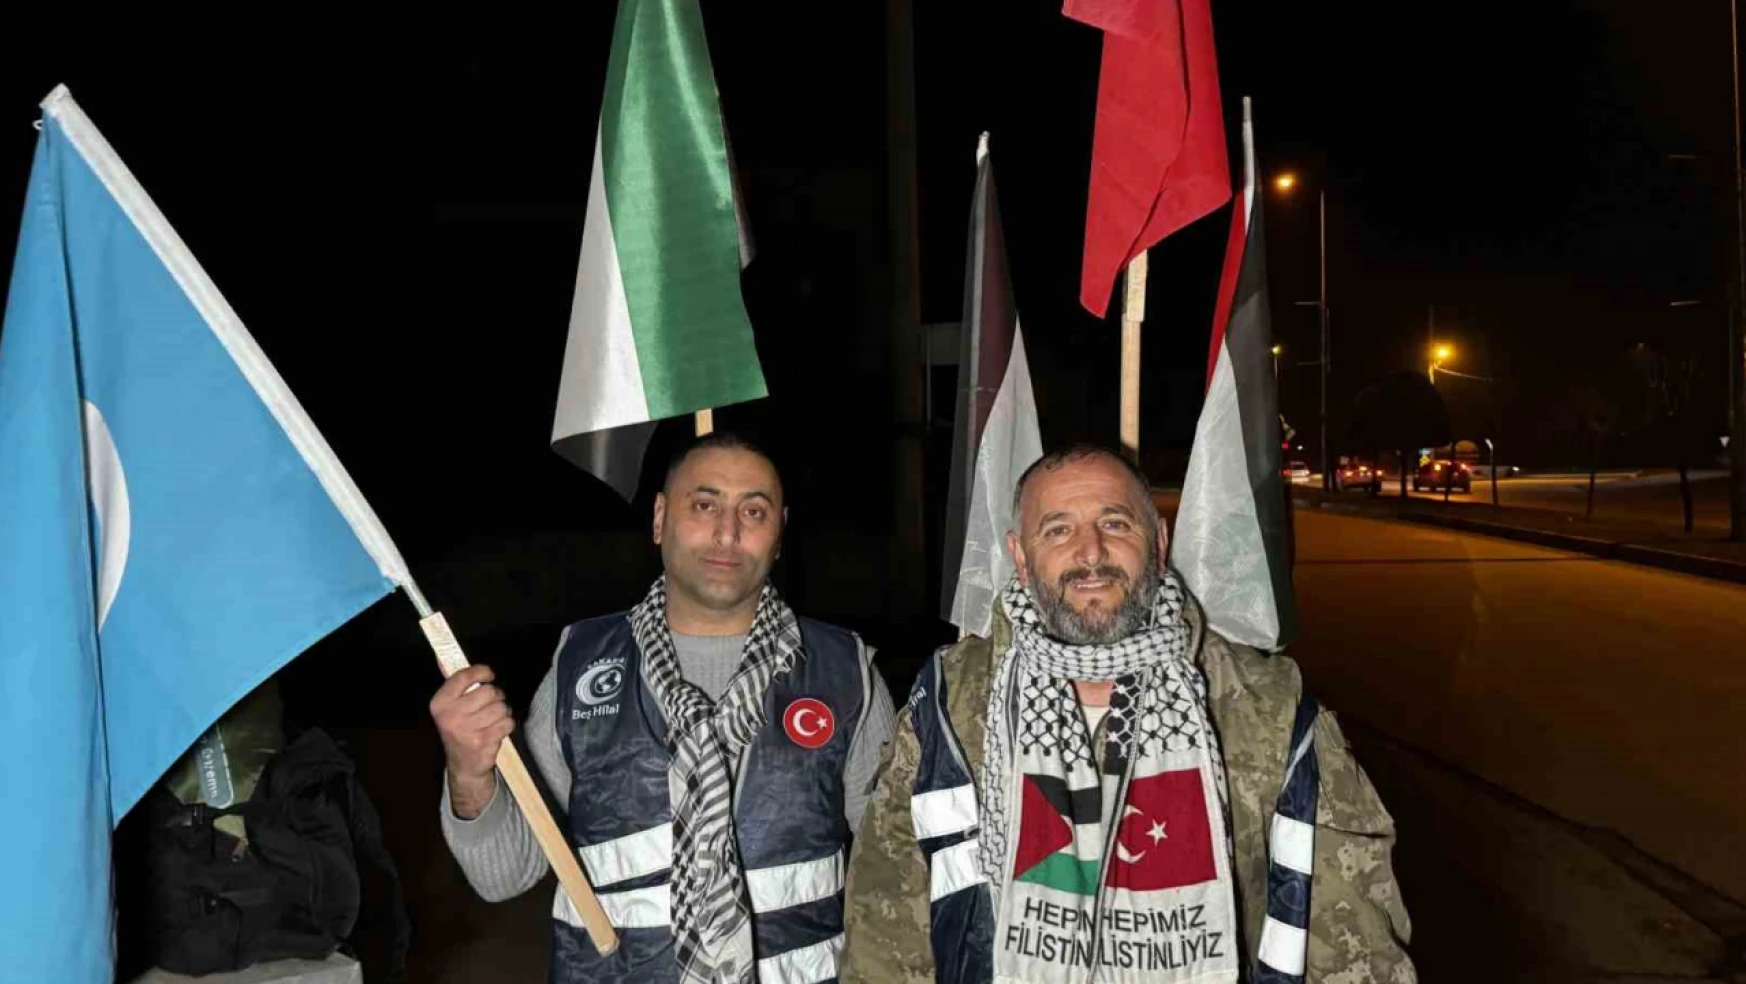 Filistin'e özgürlük için Ankara'ya yürüyorlar